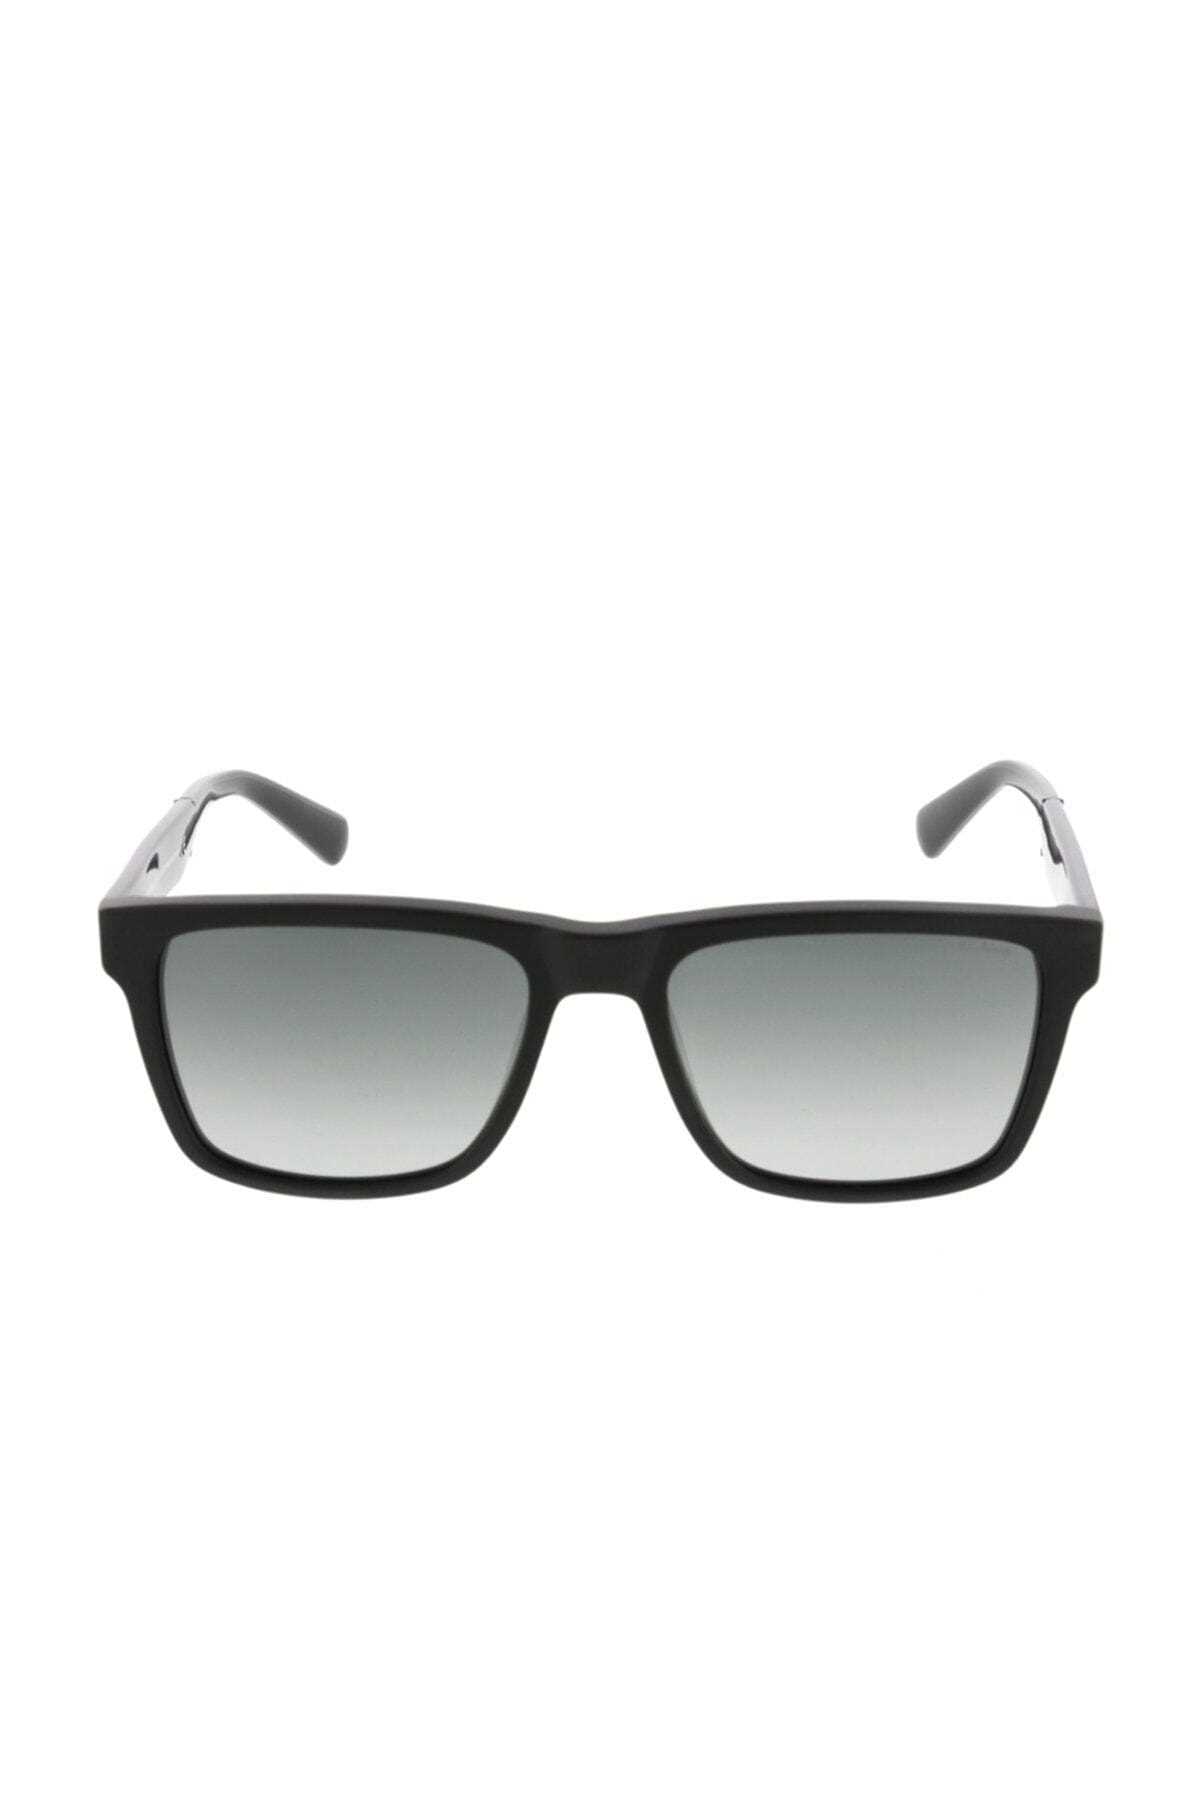 خرید مستقیم عینک دودی جدید برند موستانگ رنگ نقره ای کد ty35106603